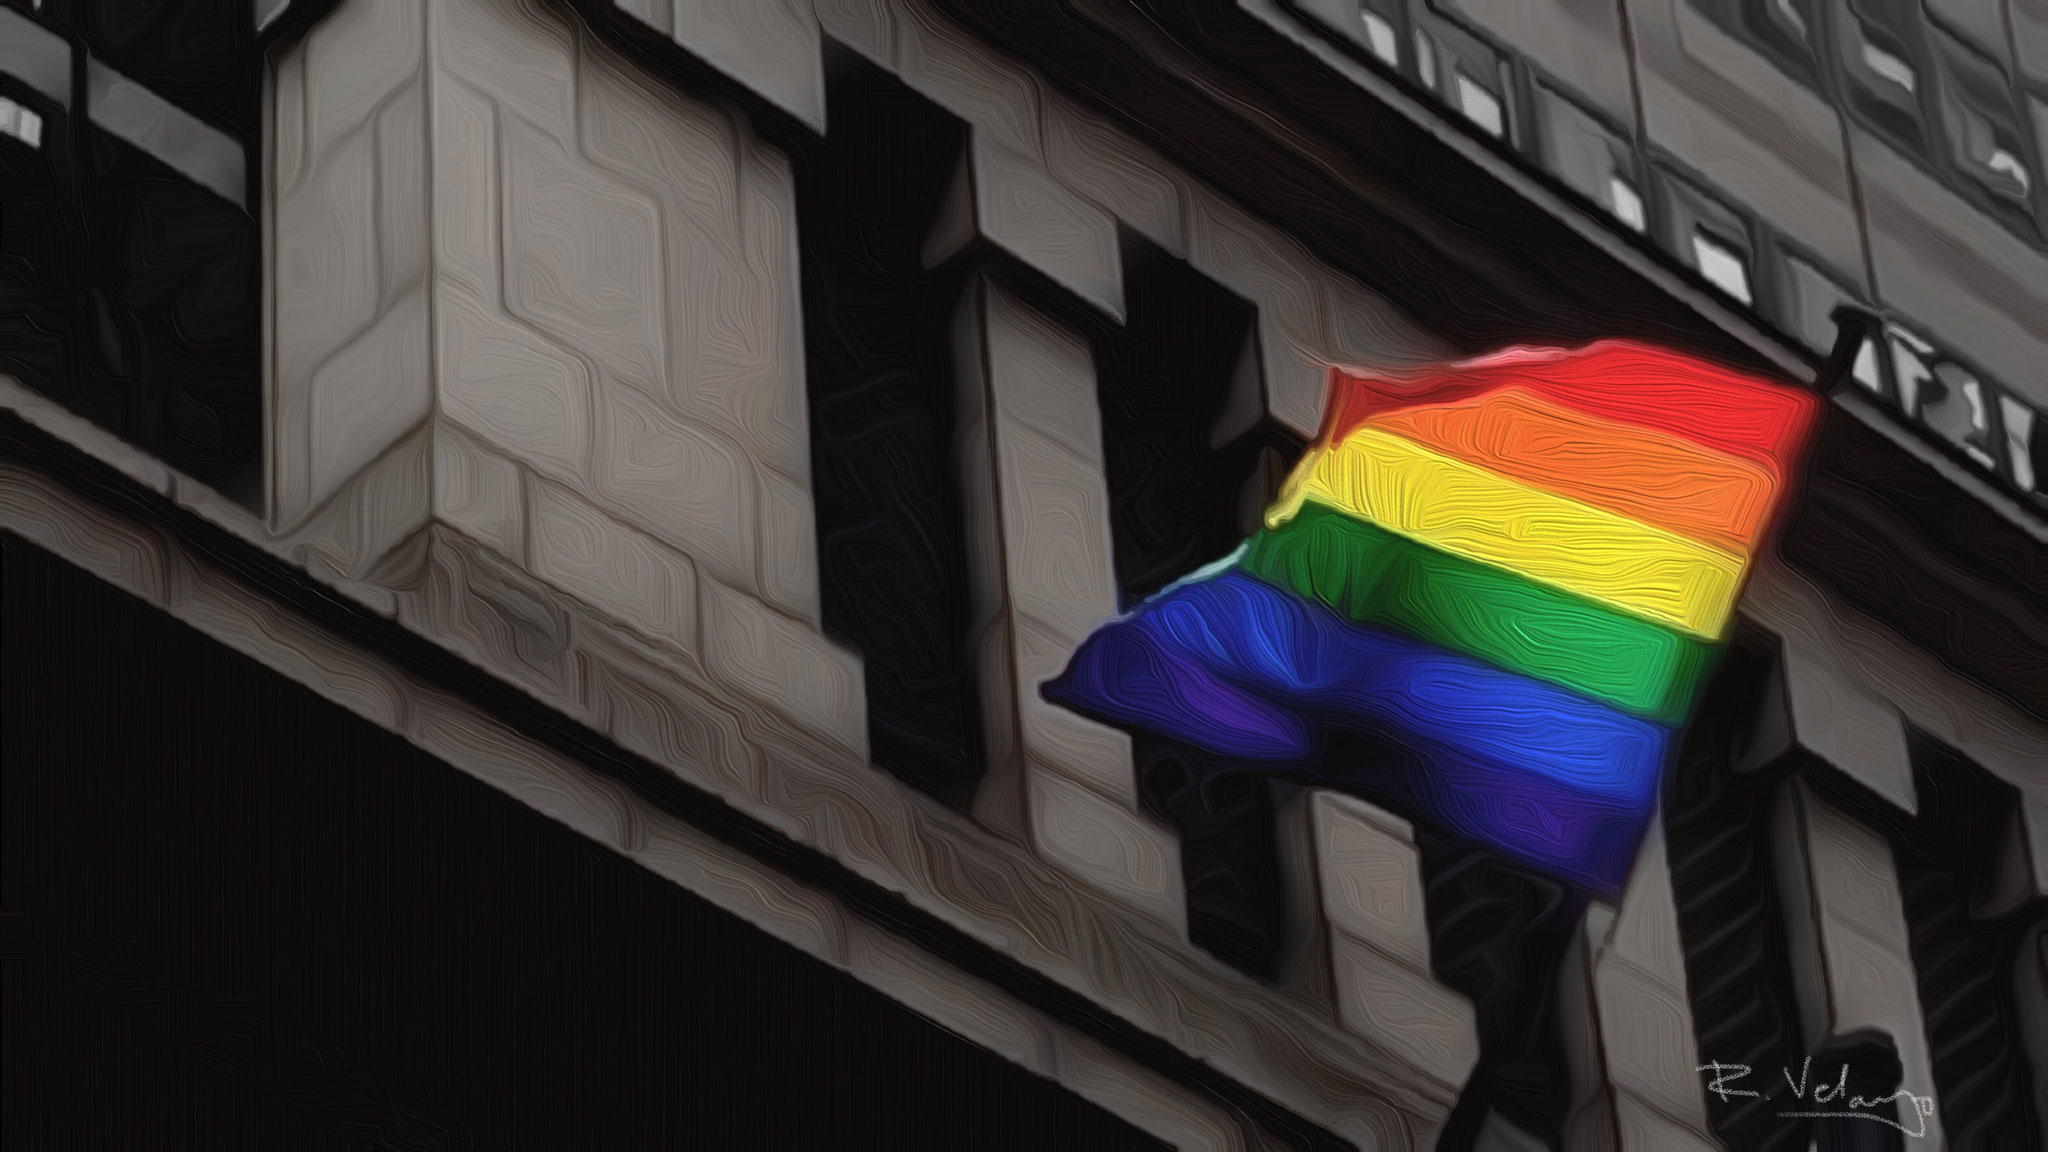 "RAINBOW FLAG ON NYSE BUILDING" [Created: 3/15/2020]